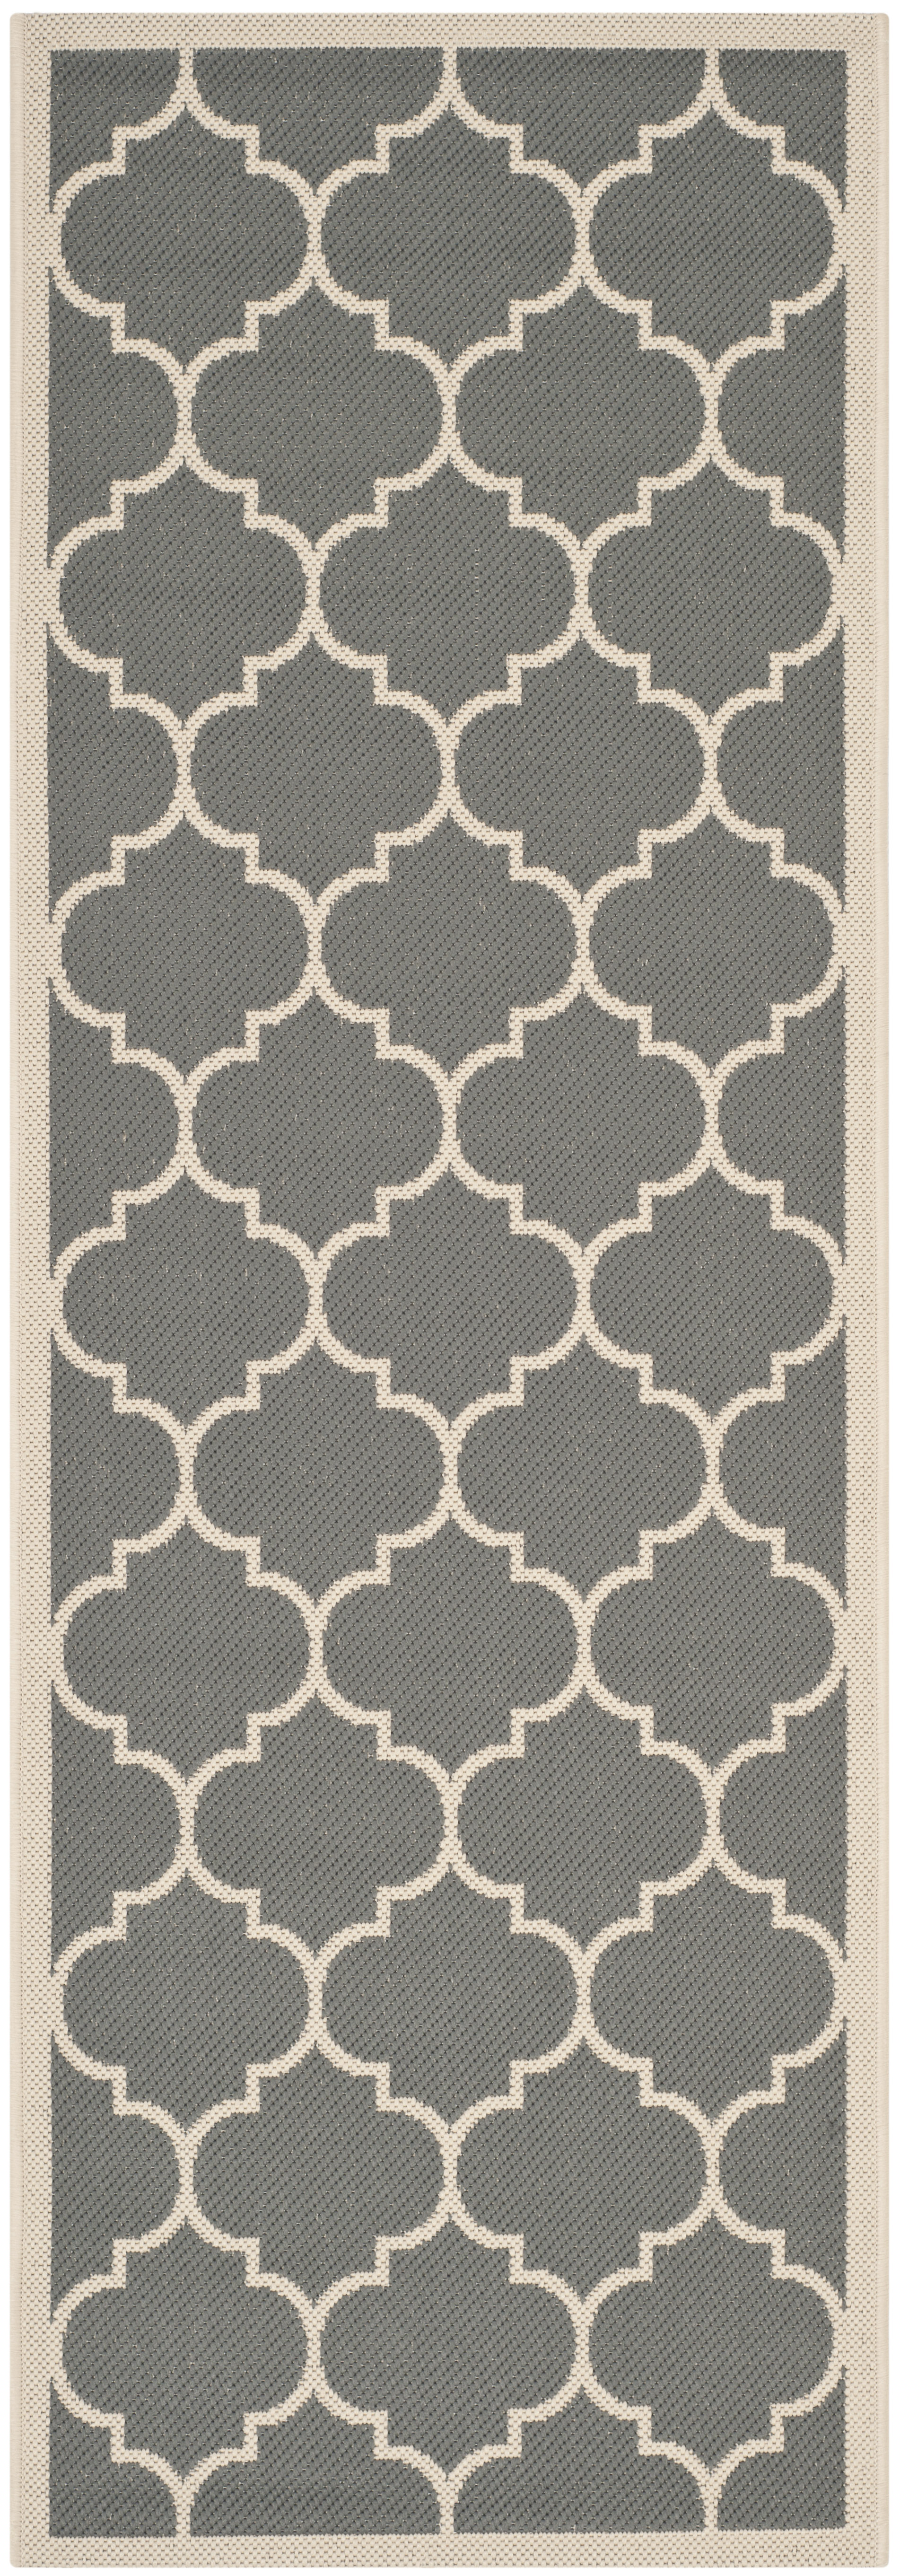 Tapis interieur / exterieur en gris anthracite & beige, 69 x 201 cm